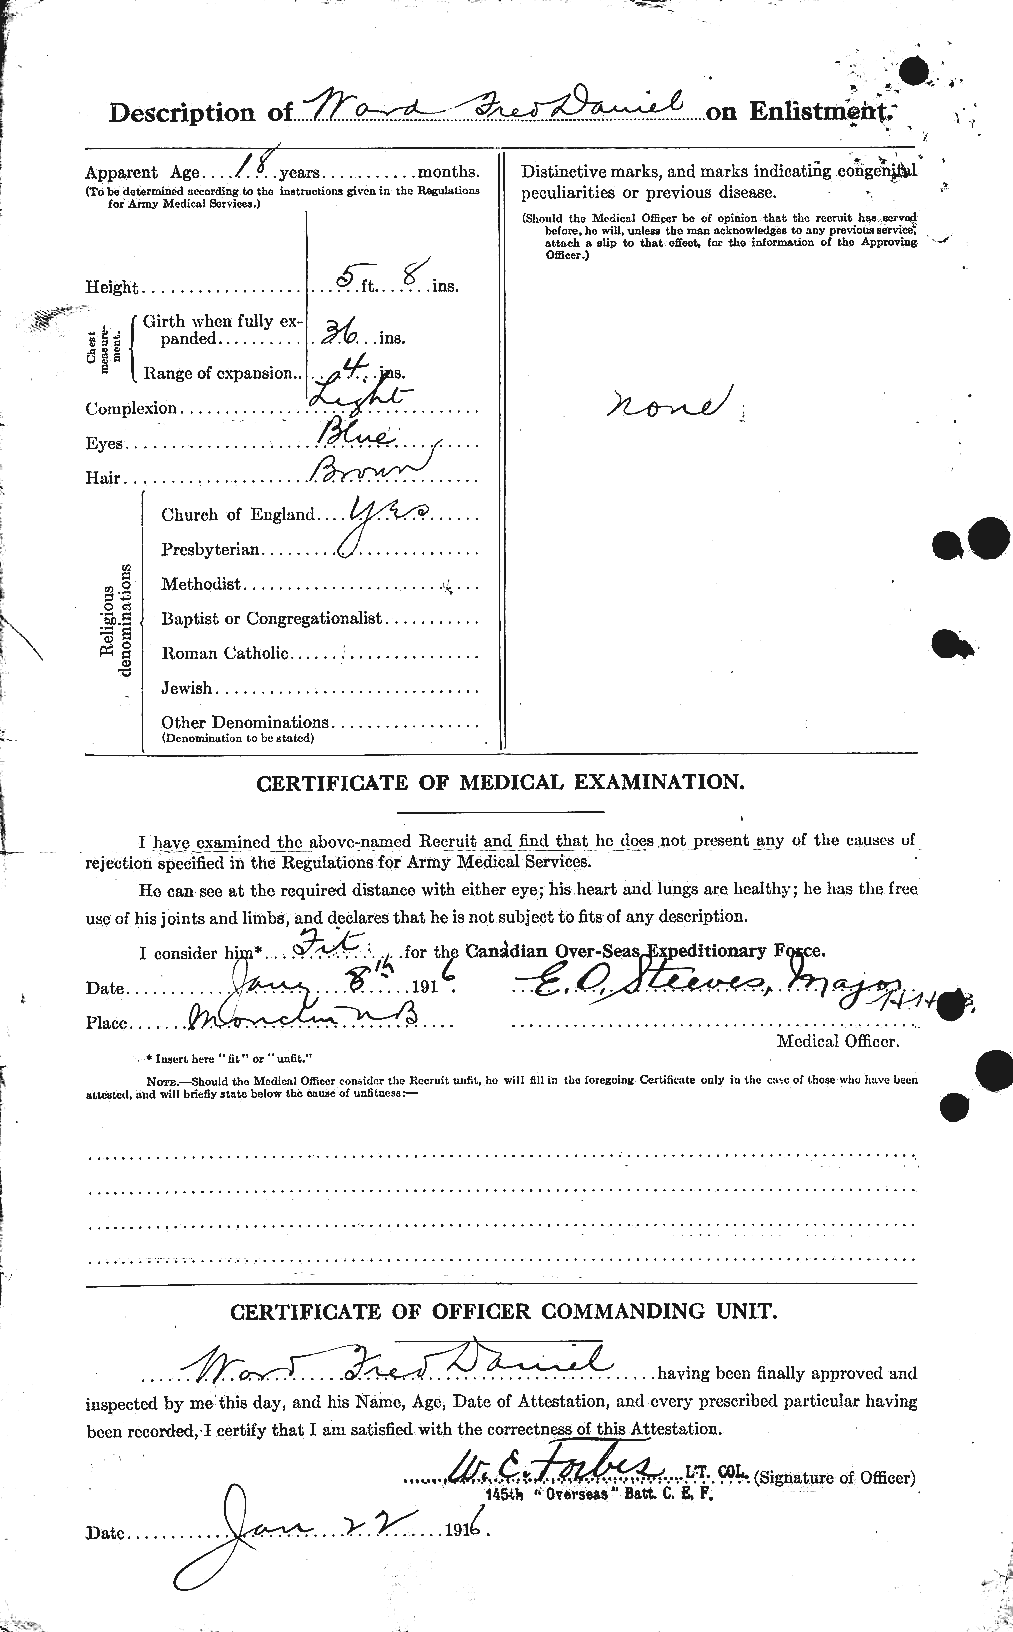 Dossiers du Personnel de la Première Guerre mondiale - CEC 657708b